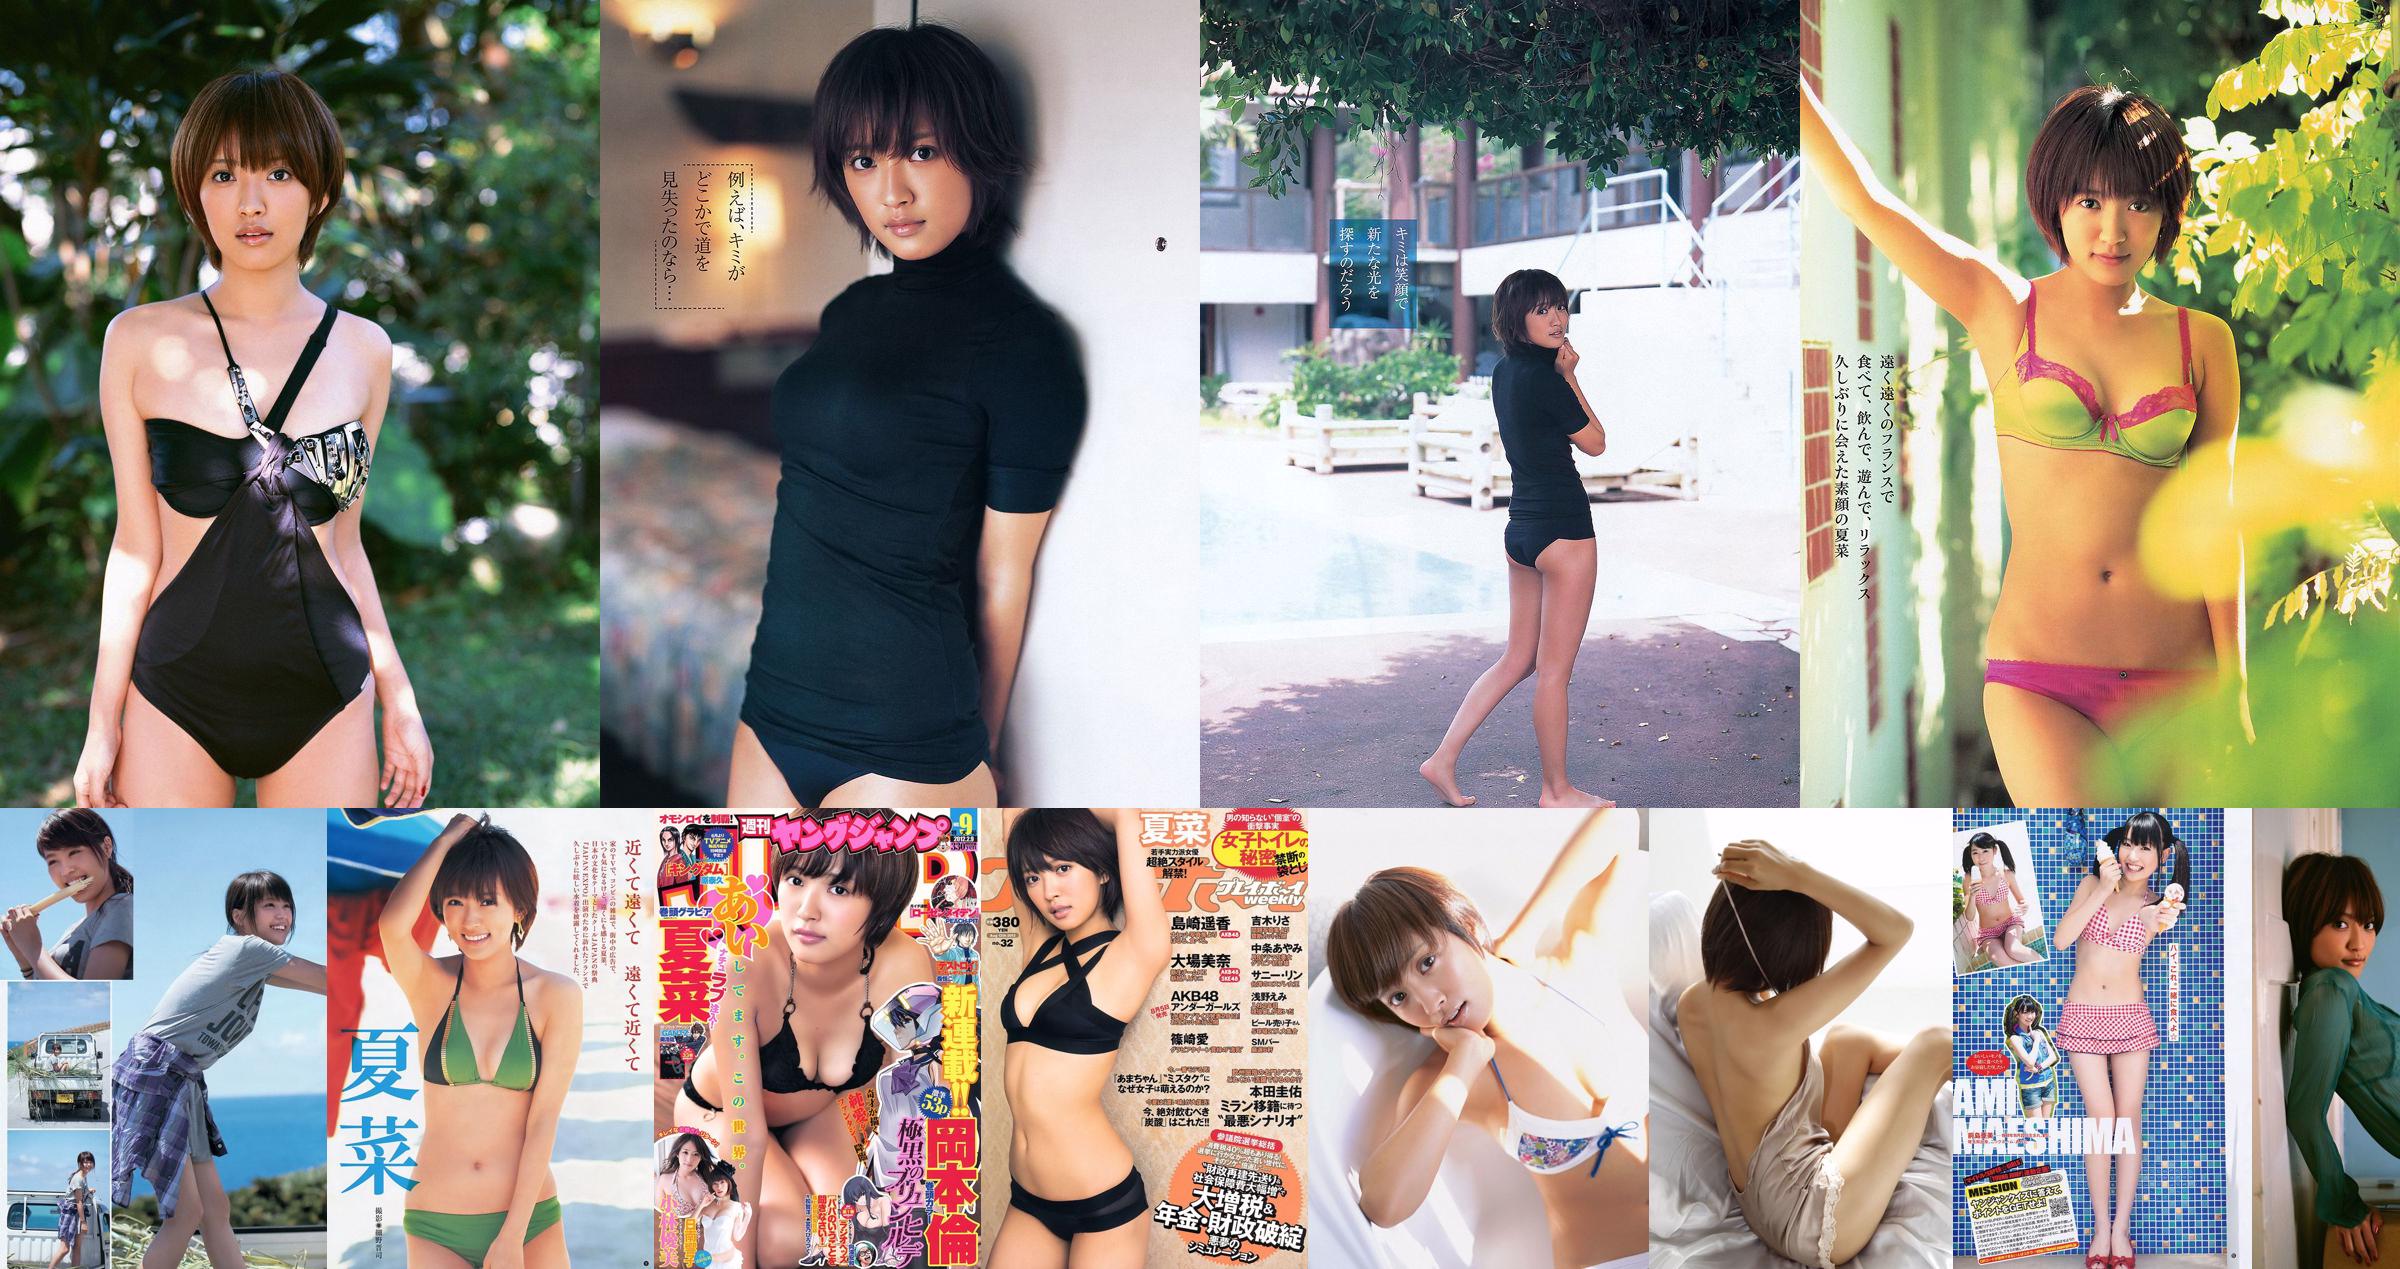 Zomer Naa Kimoto Misaki [Wekelijkse Young Jump] 2013 No.41 Photo Magazine No.47ddec Pagina 4